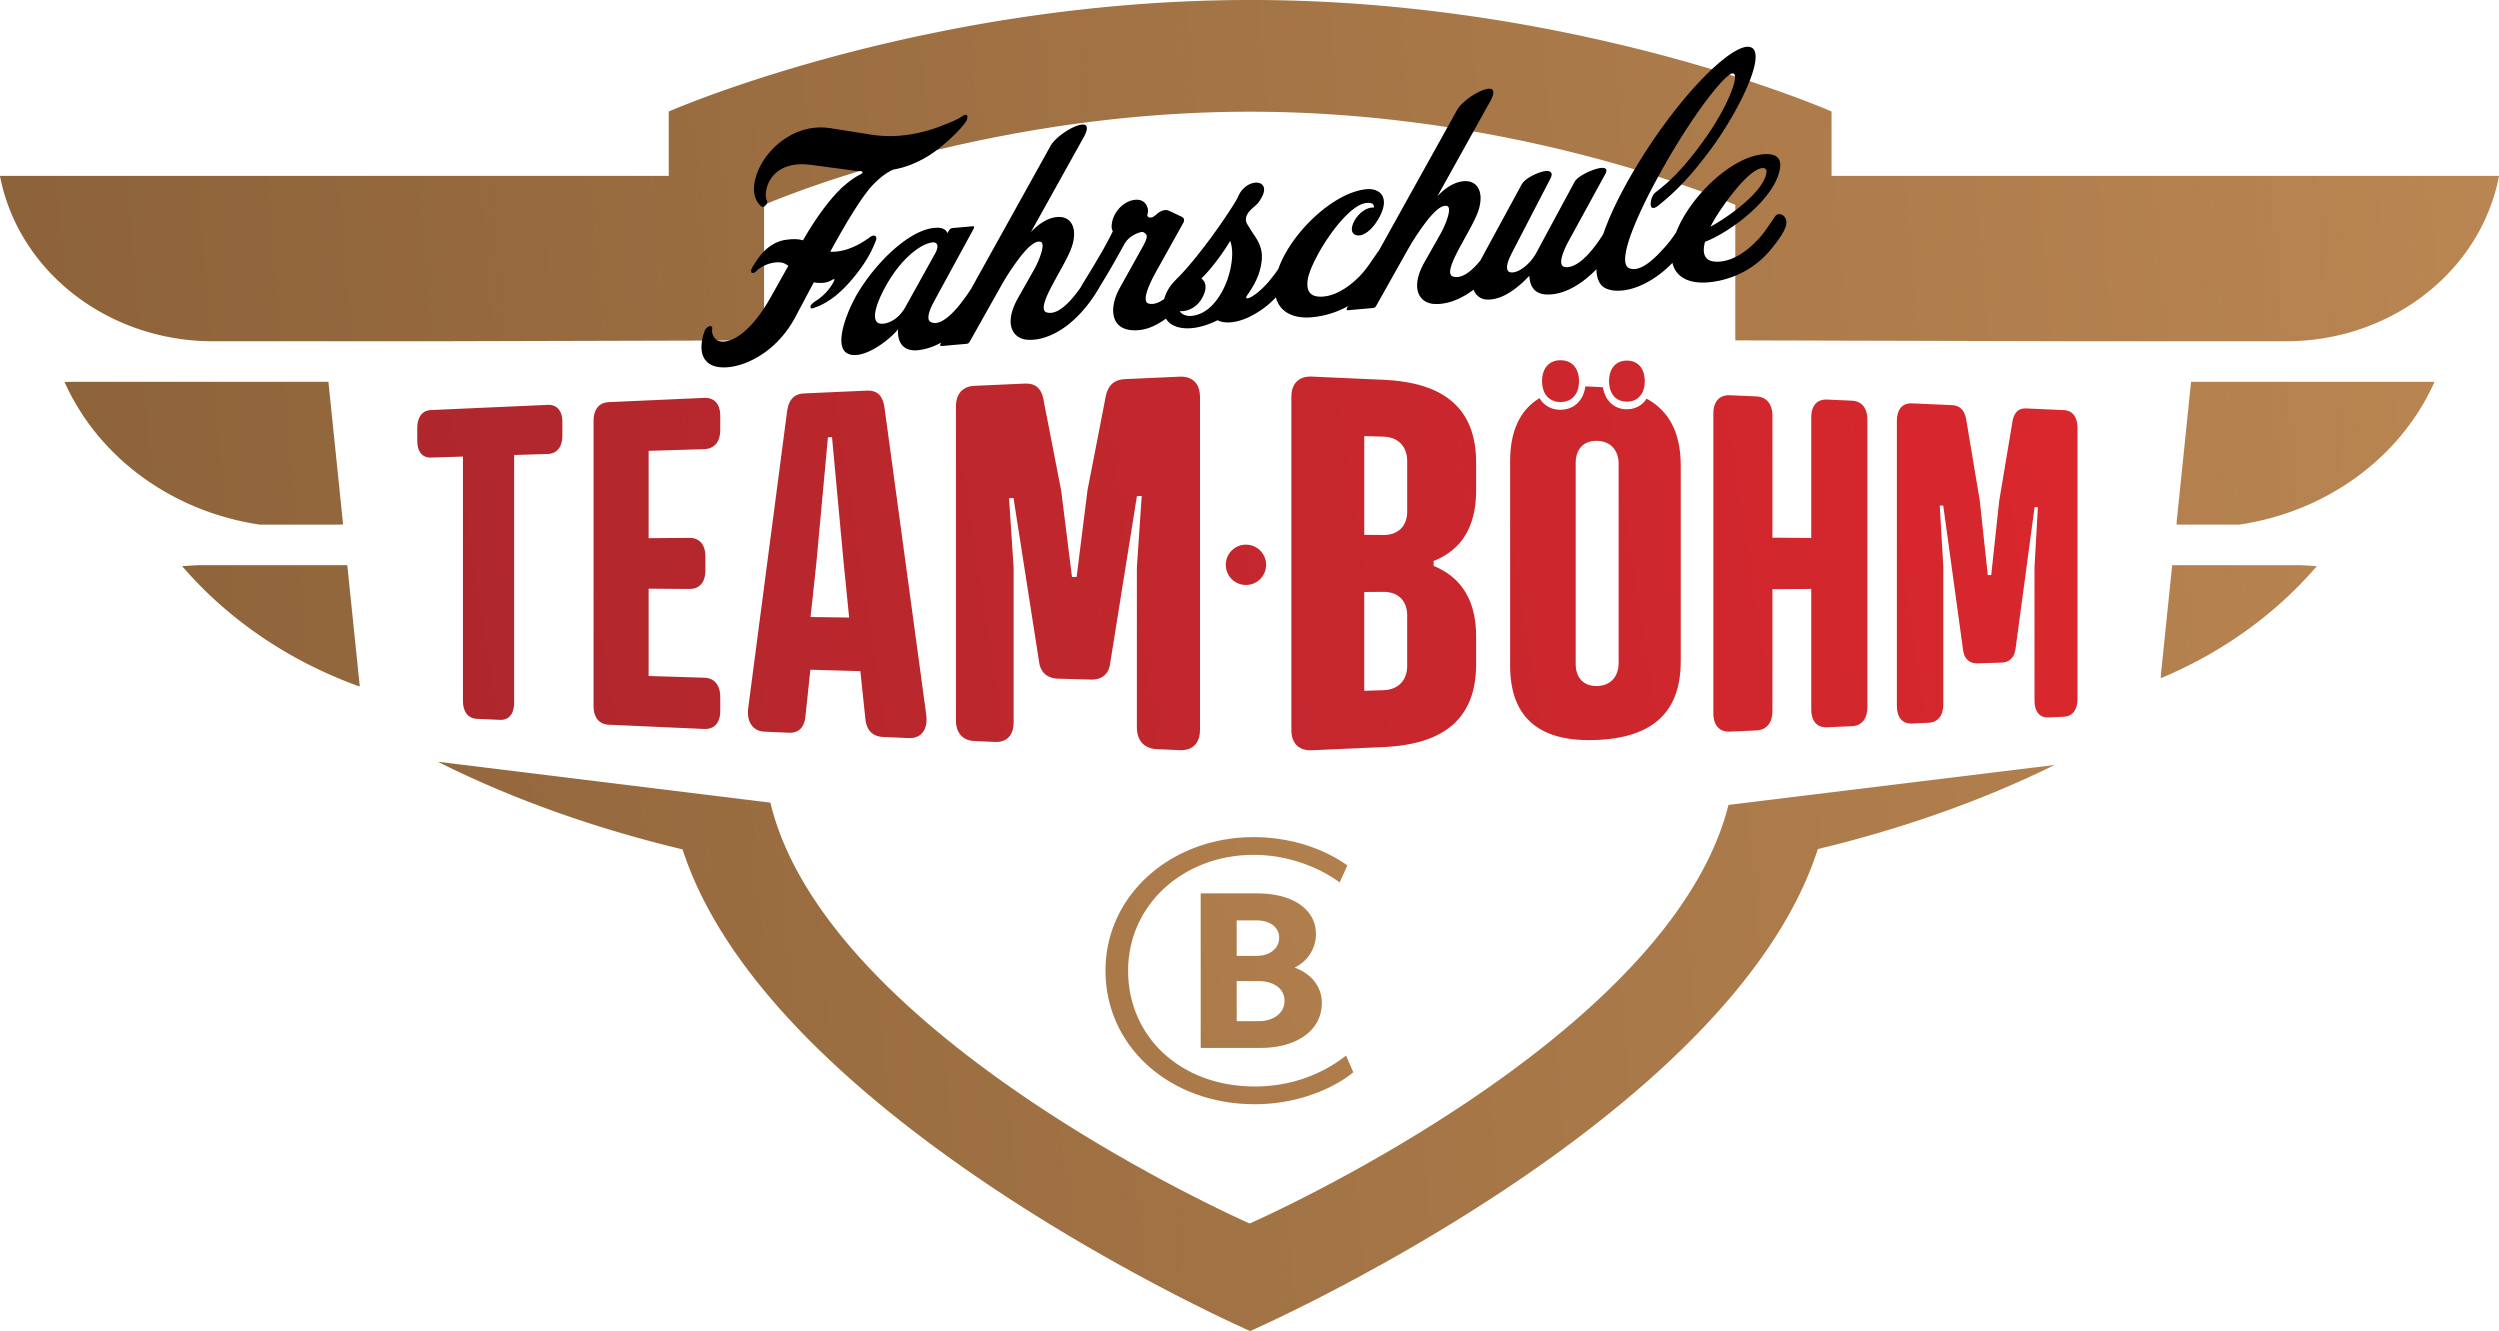 Fahrschule Team Böhm